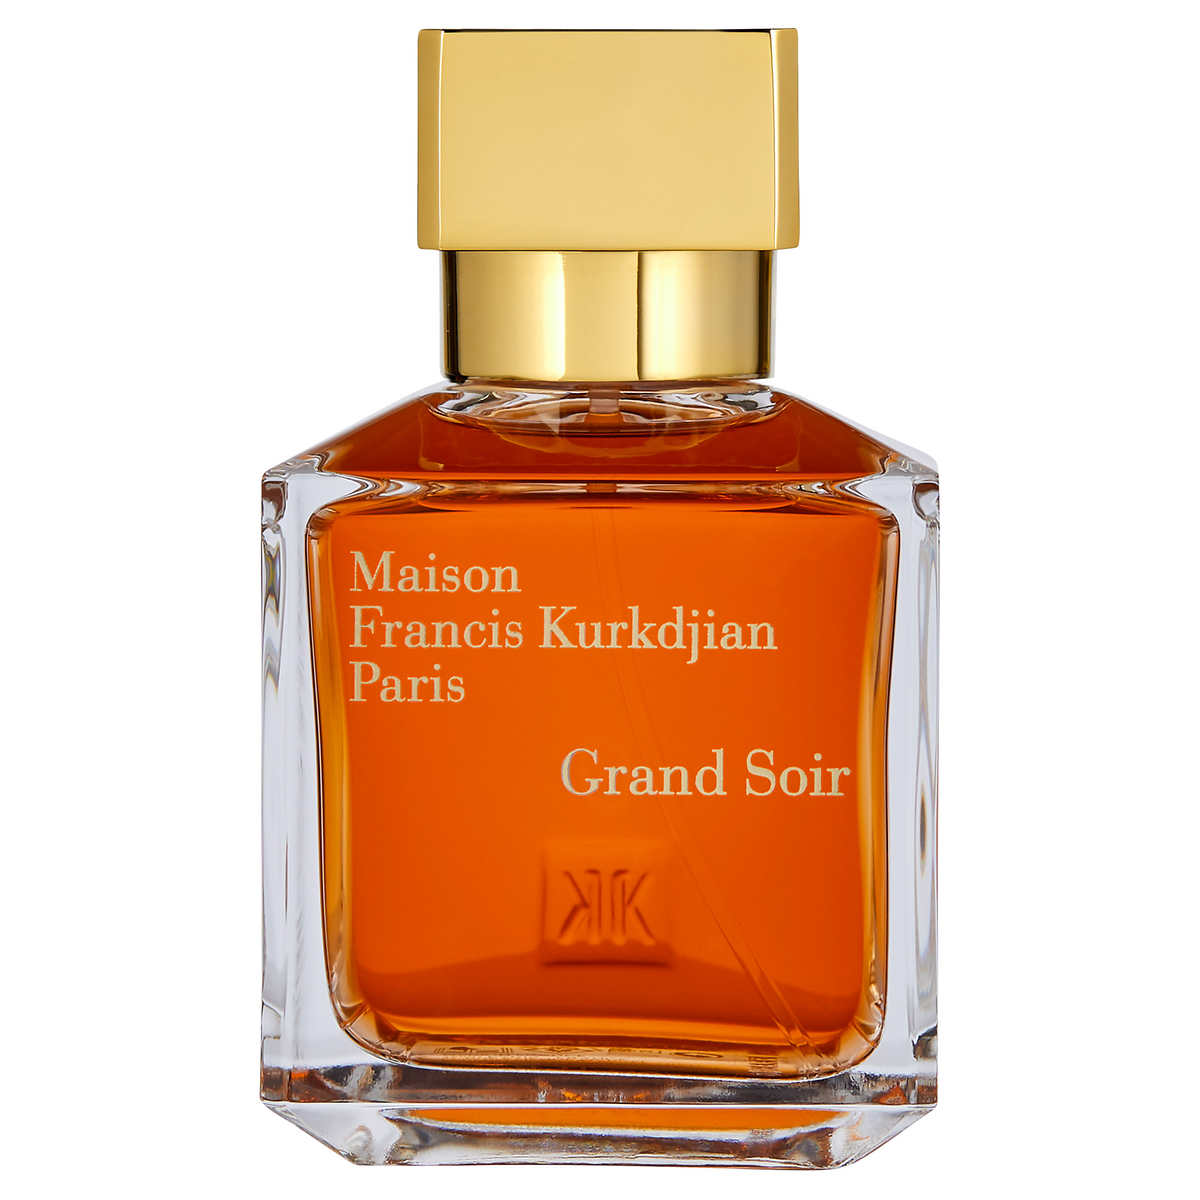 Maison Francis Kurkdjian Grand Soir Eau de parfum TESTER